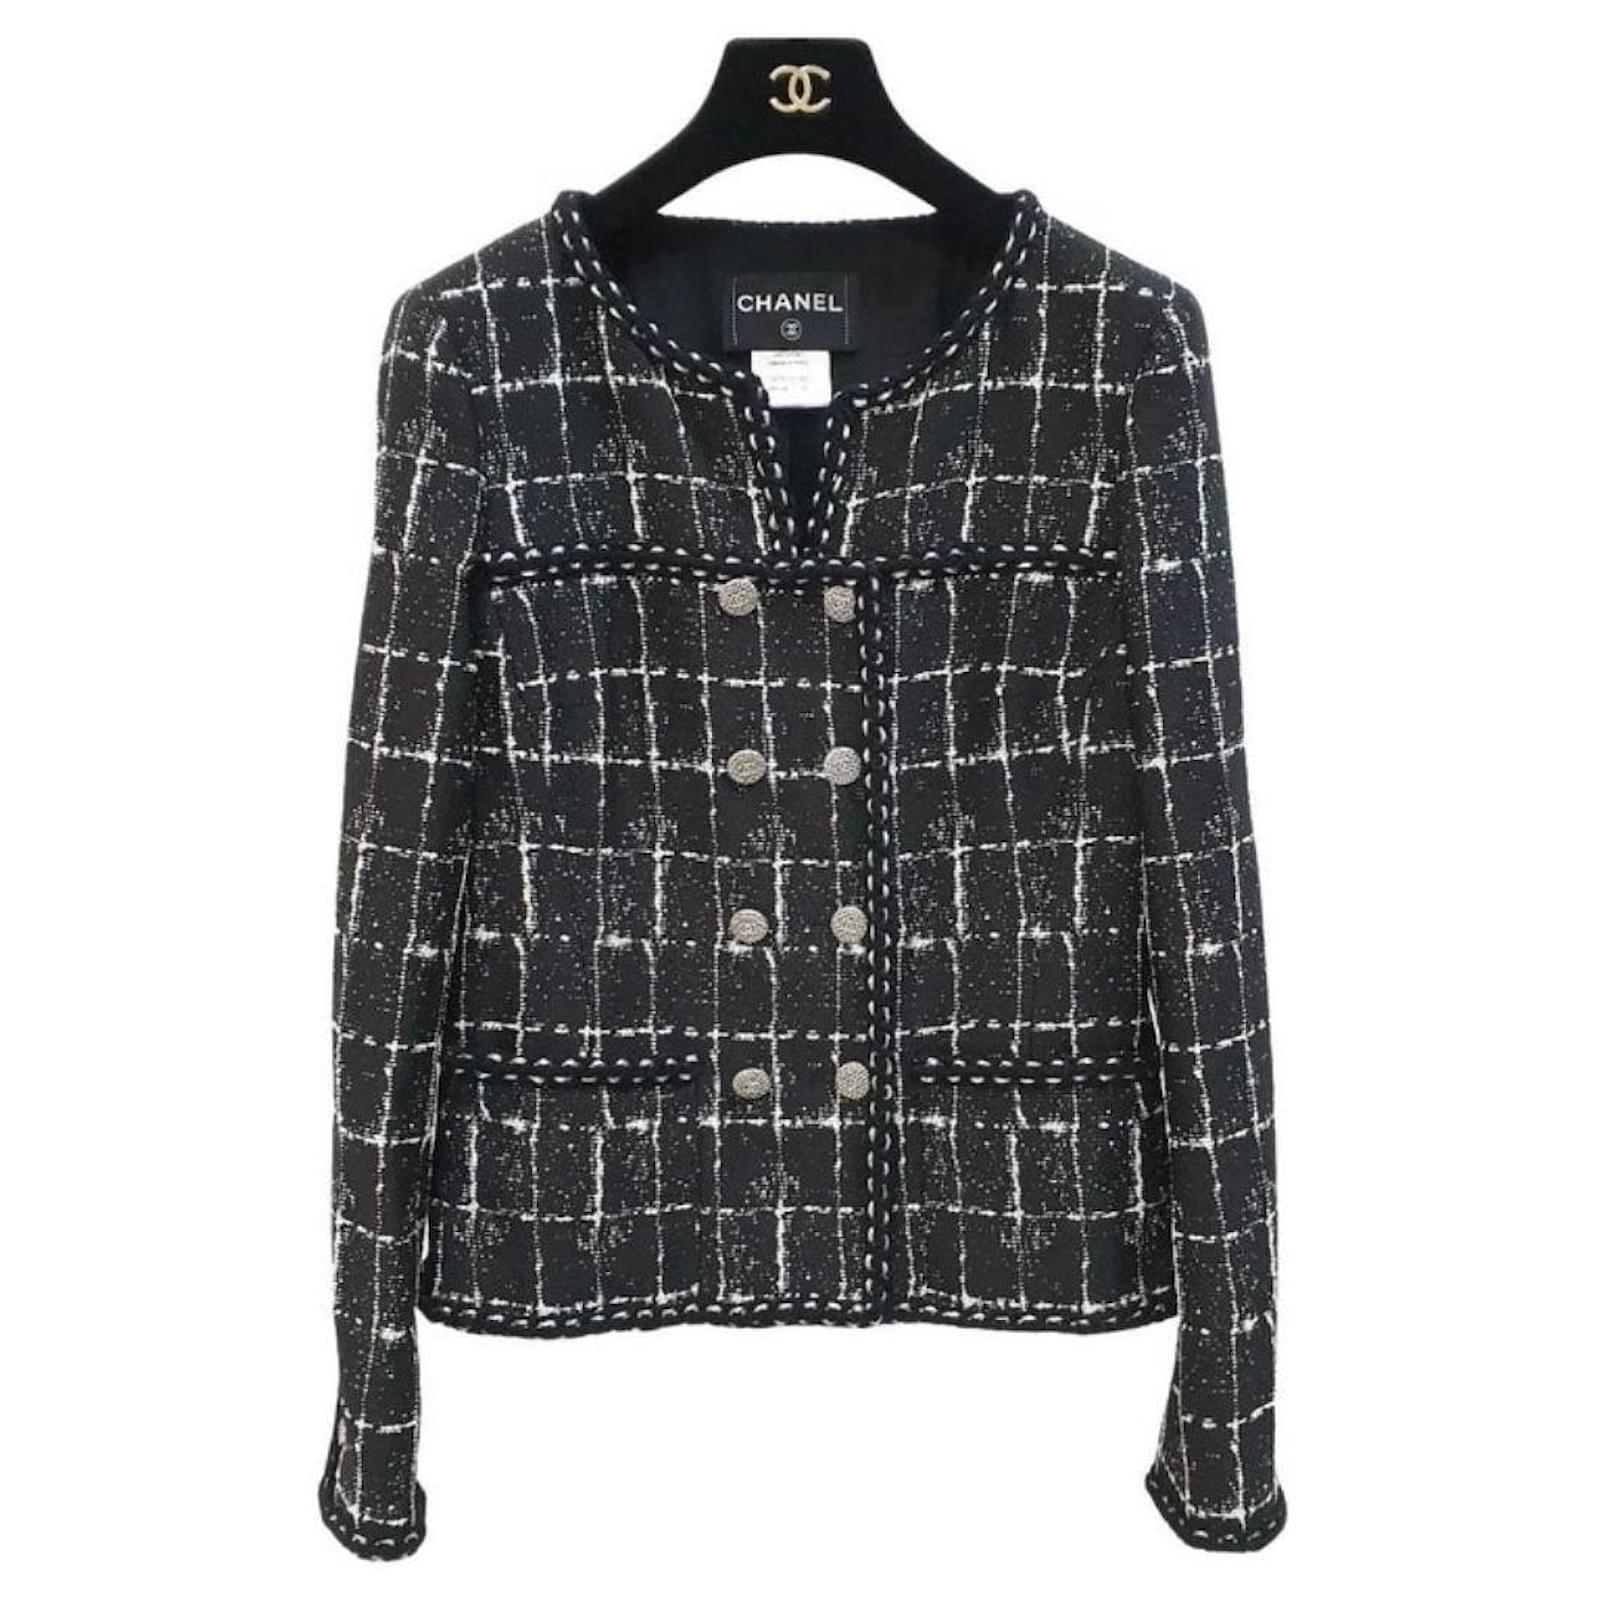 Chanel jacket 38 size - Gem